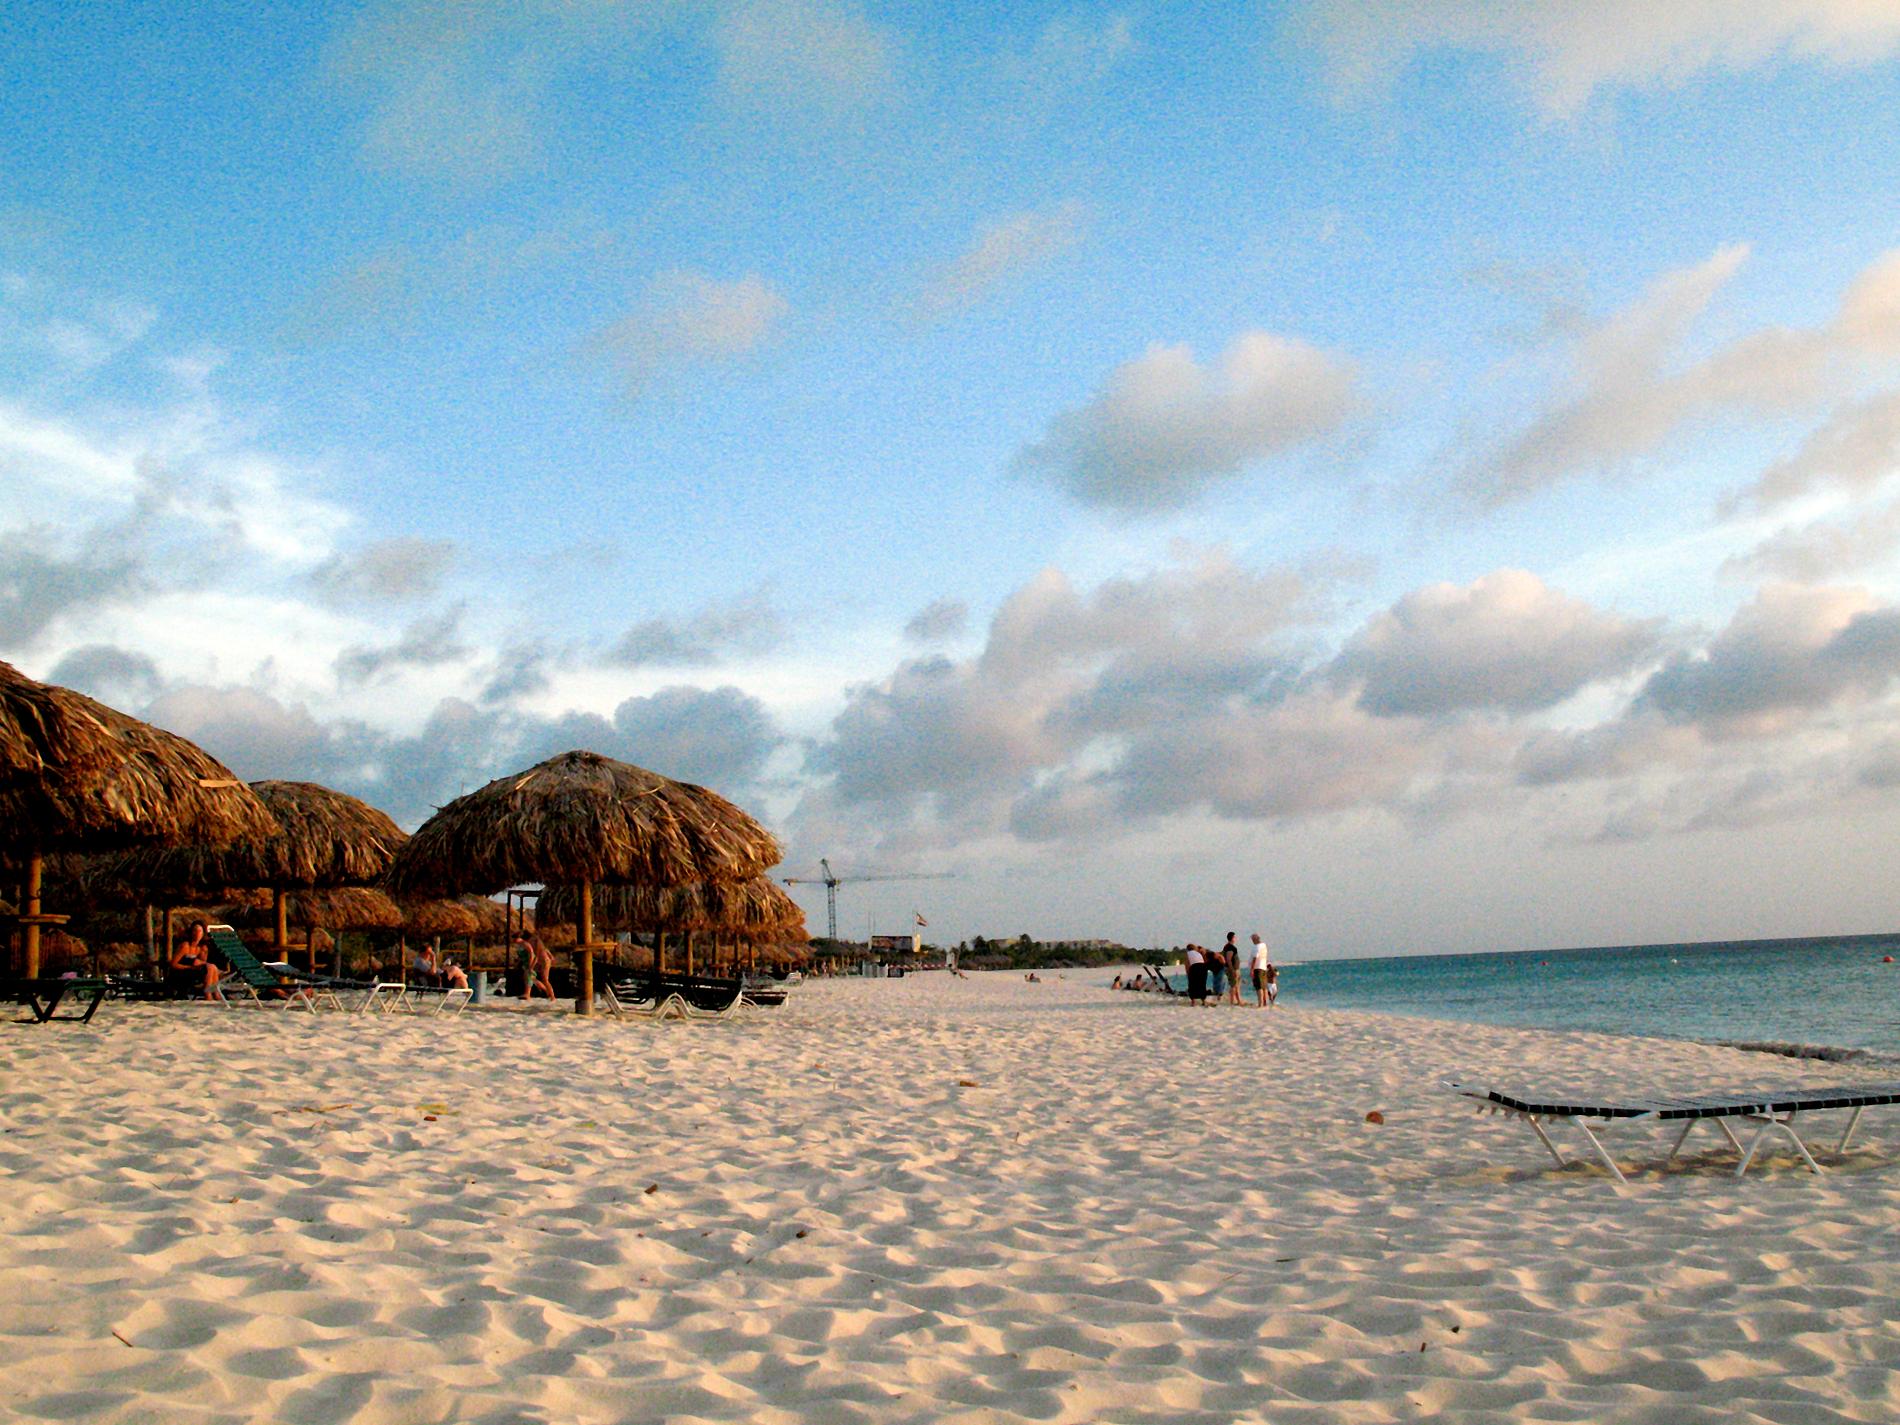 3. Palm/Eagle Beach, Aruba Turkost hav, rosa flamingor och karibiska drinkar. Låter det lockande? Åk då till Aruba och sälla dig till den enorma skara som fallit pladask för Västindiens färgstarka paradisö, den minsta av ABC-öarna. Här finns fantastiskt vackra Eagle Beach (bilden), lugn och bildskön och perfekt för långa strandpromenader, och Palm Beach, med många barer och vattenaktiviteter.